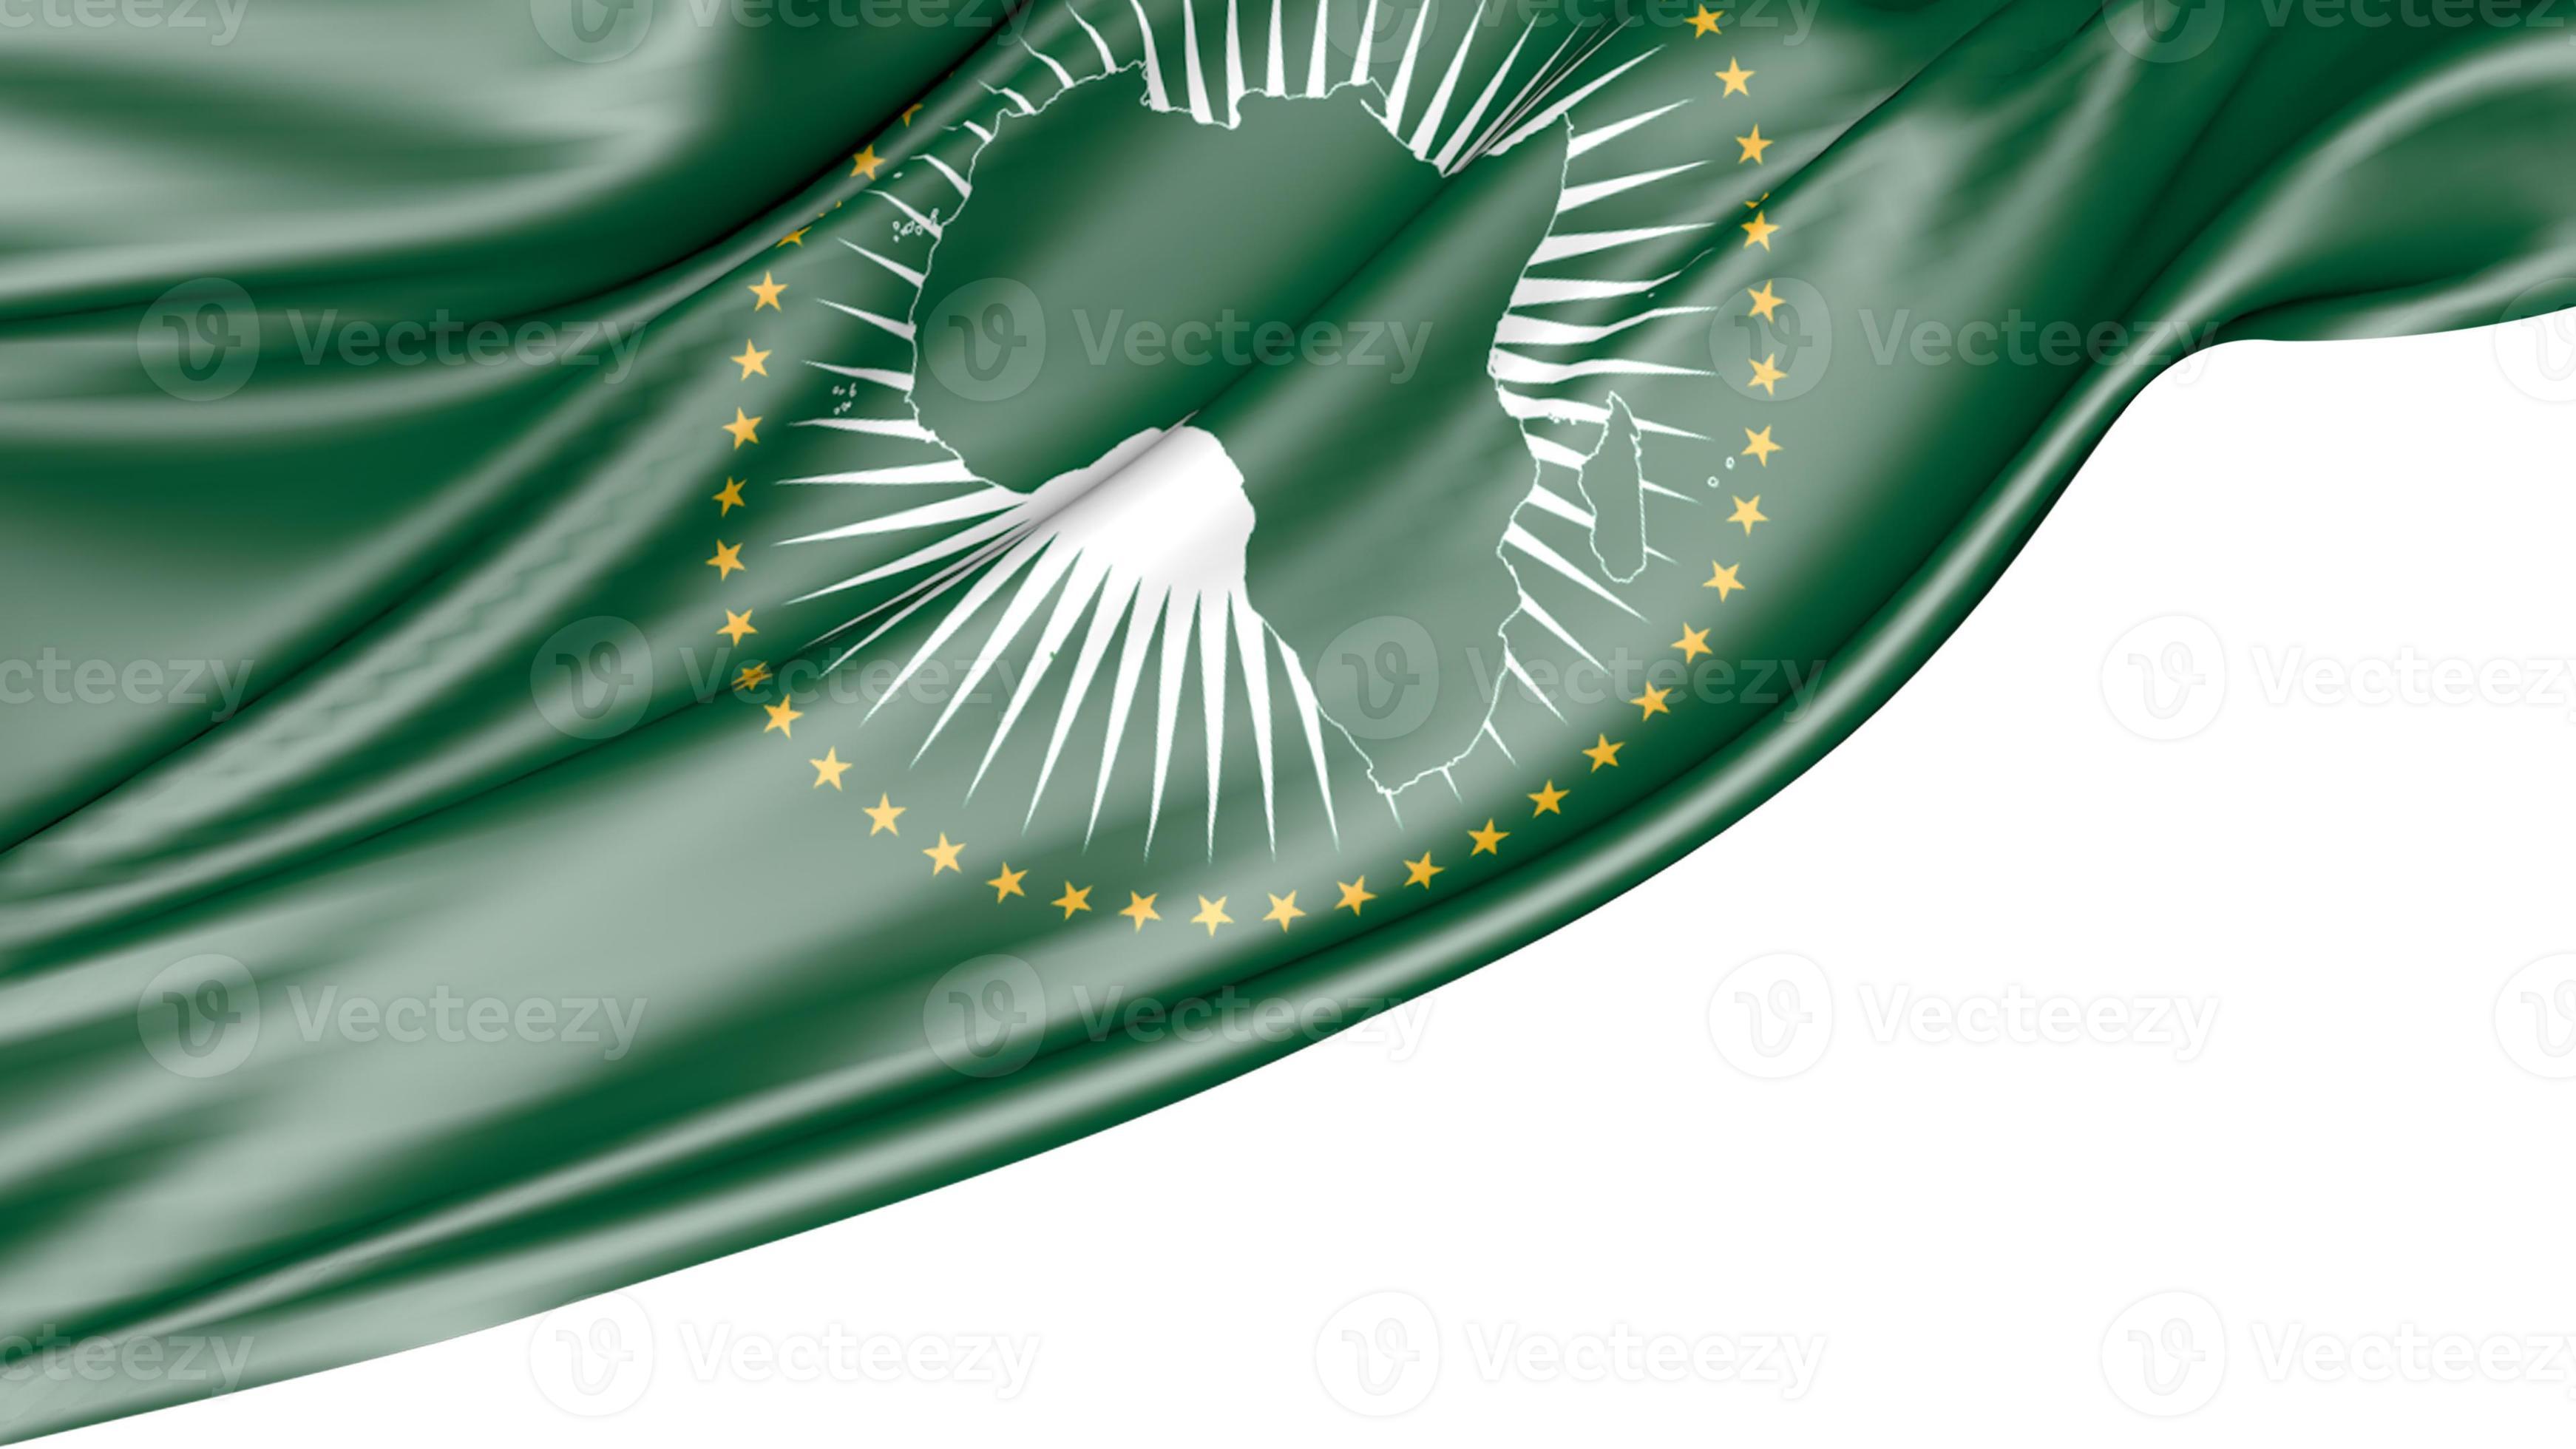 Cờ Liên hiệp châu Phi trên nền trắng là biểu tượng của sự đoàn kết và hòa bình giữa các quốc gia trên lục địa châu Phi. Hình ảnh này đầy ý nghĩa và đem lại cảm giác an nhiên cho người xem. Hãy xem ngay hình ảnh liên quan để tận hưởng sự yên bình của cờ Liên hiệp châu Phi trên nền trắng.